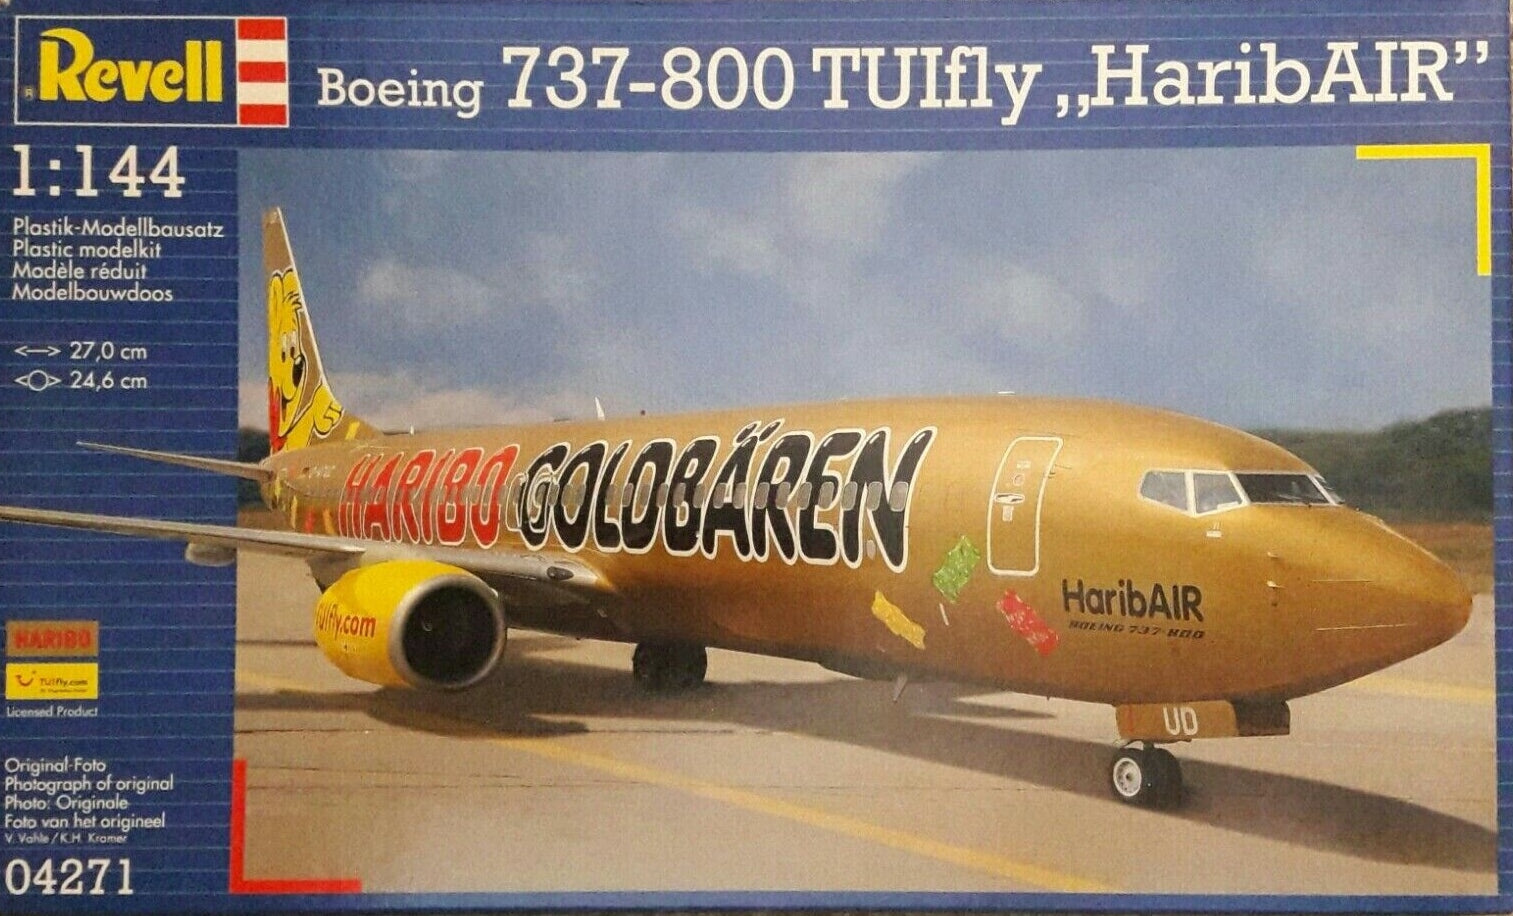 REVELL 04271 1/144 Scale, Boeing 737-800 TUIfly "HaribAIR"